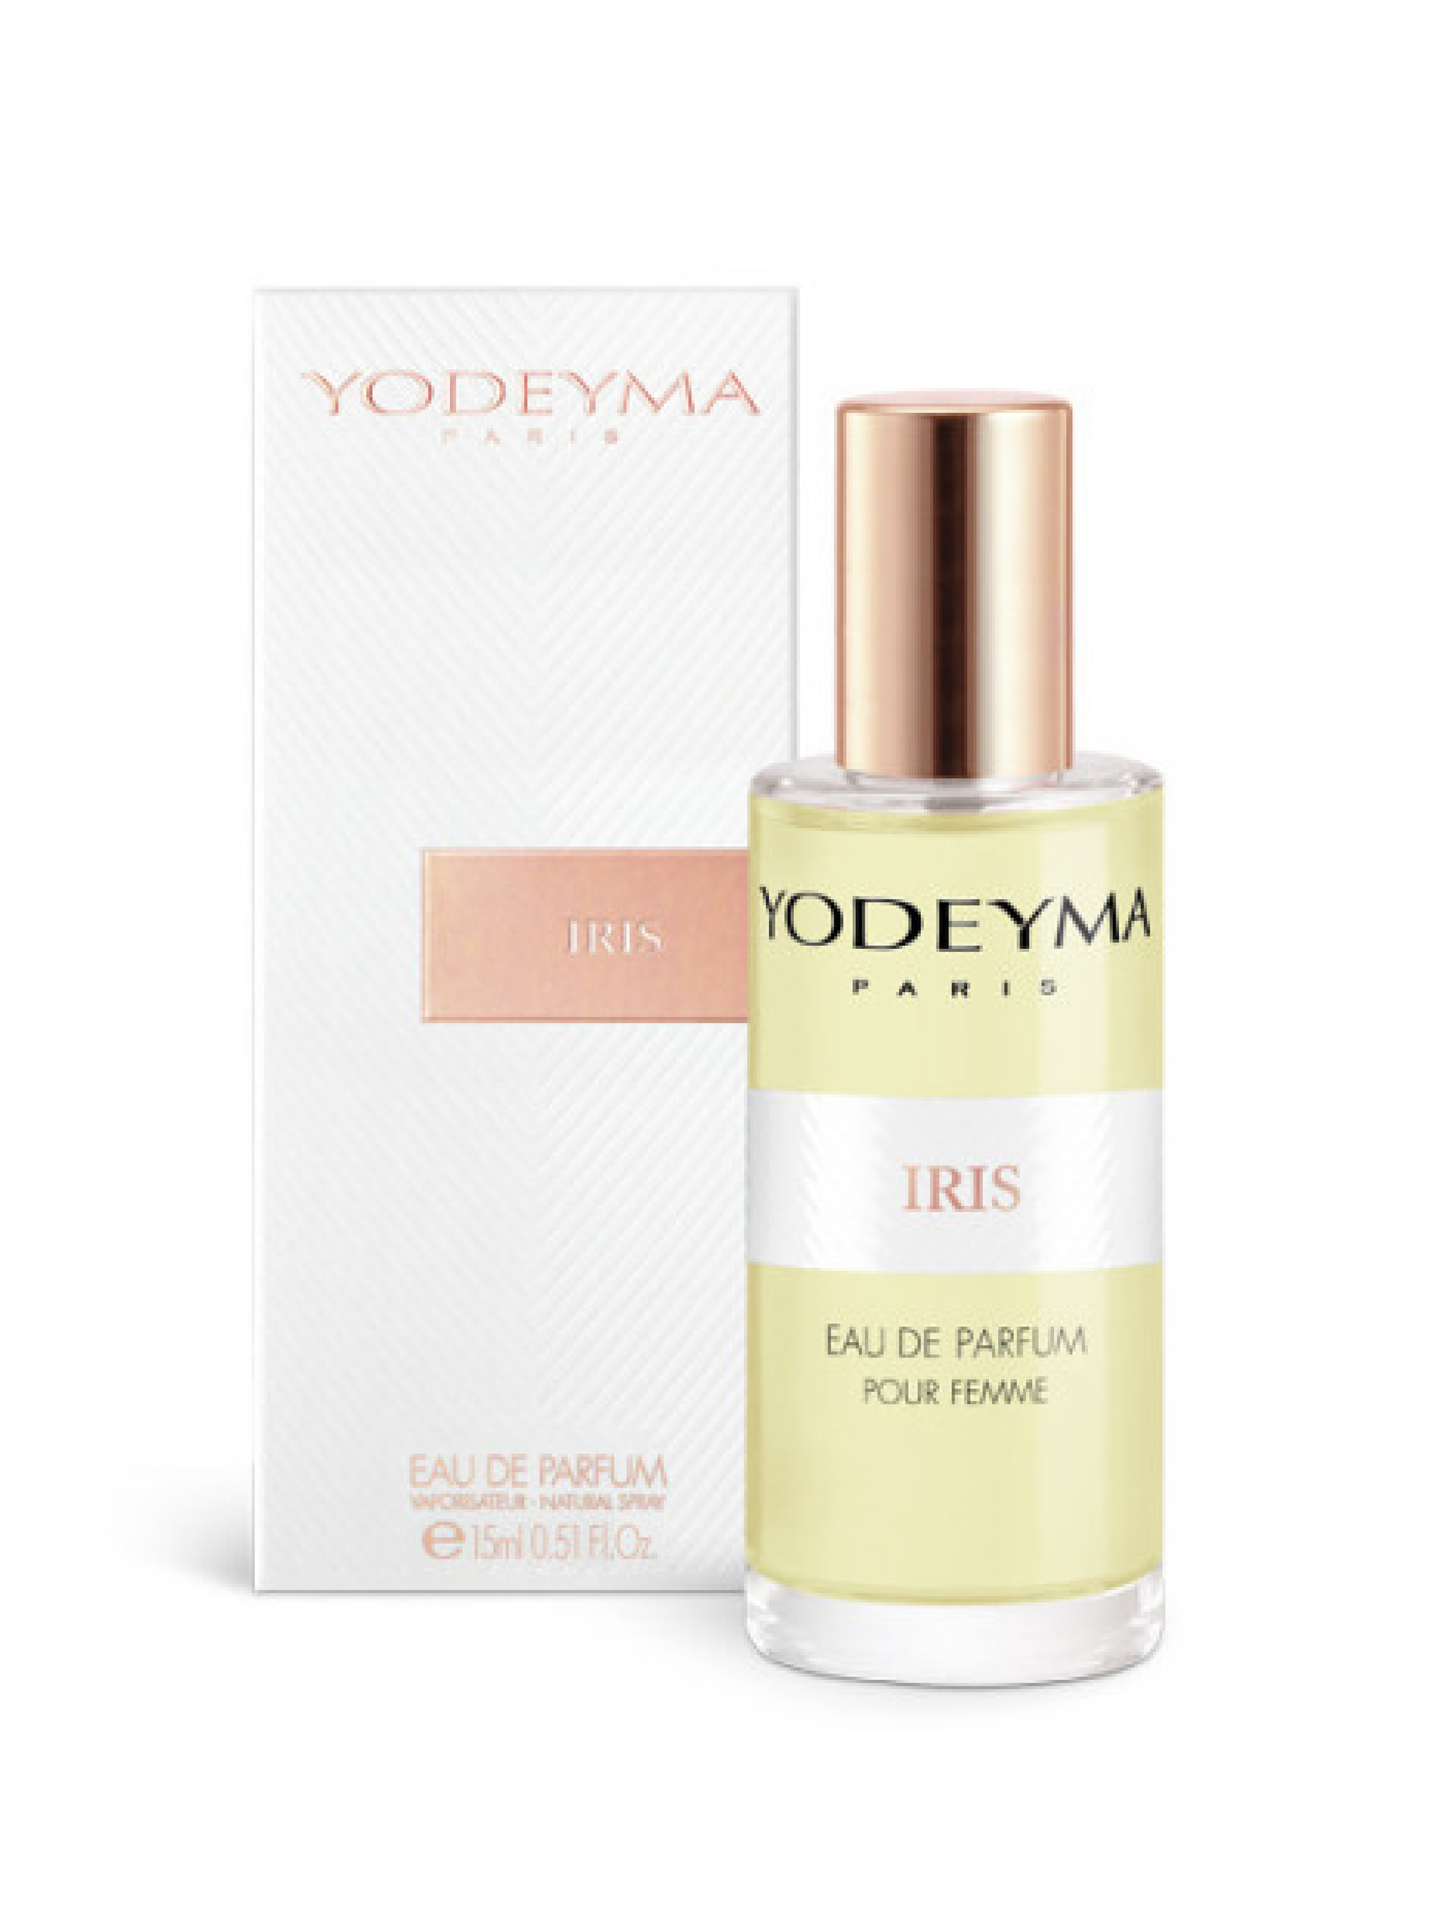 Yodeyma Iris 15ml ladies perfume